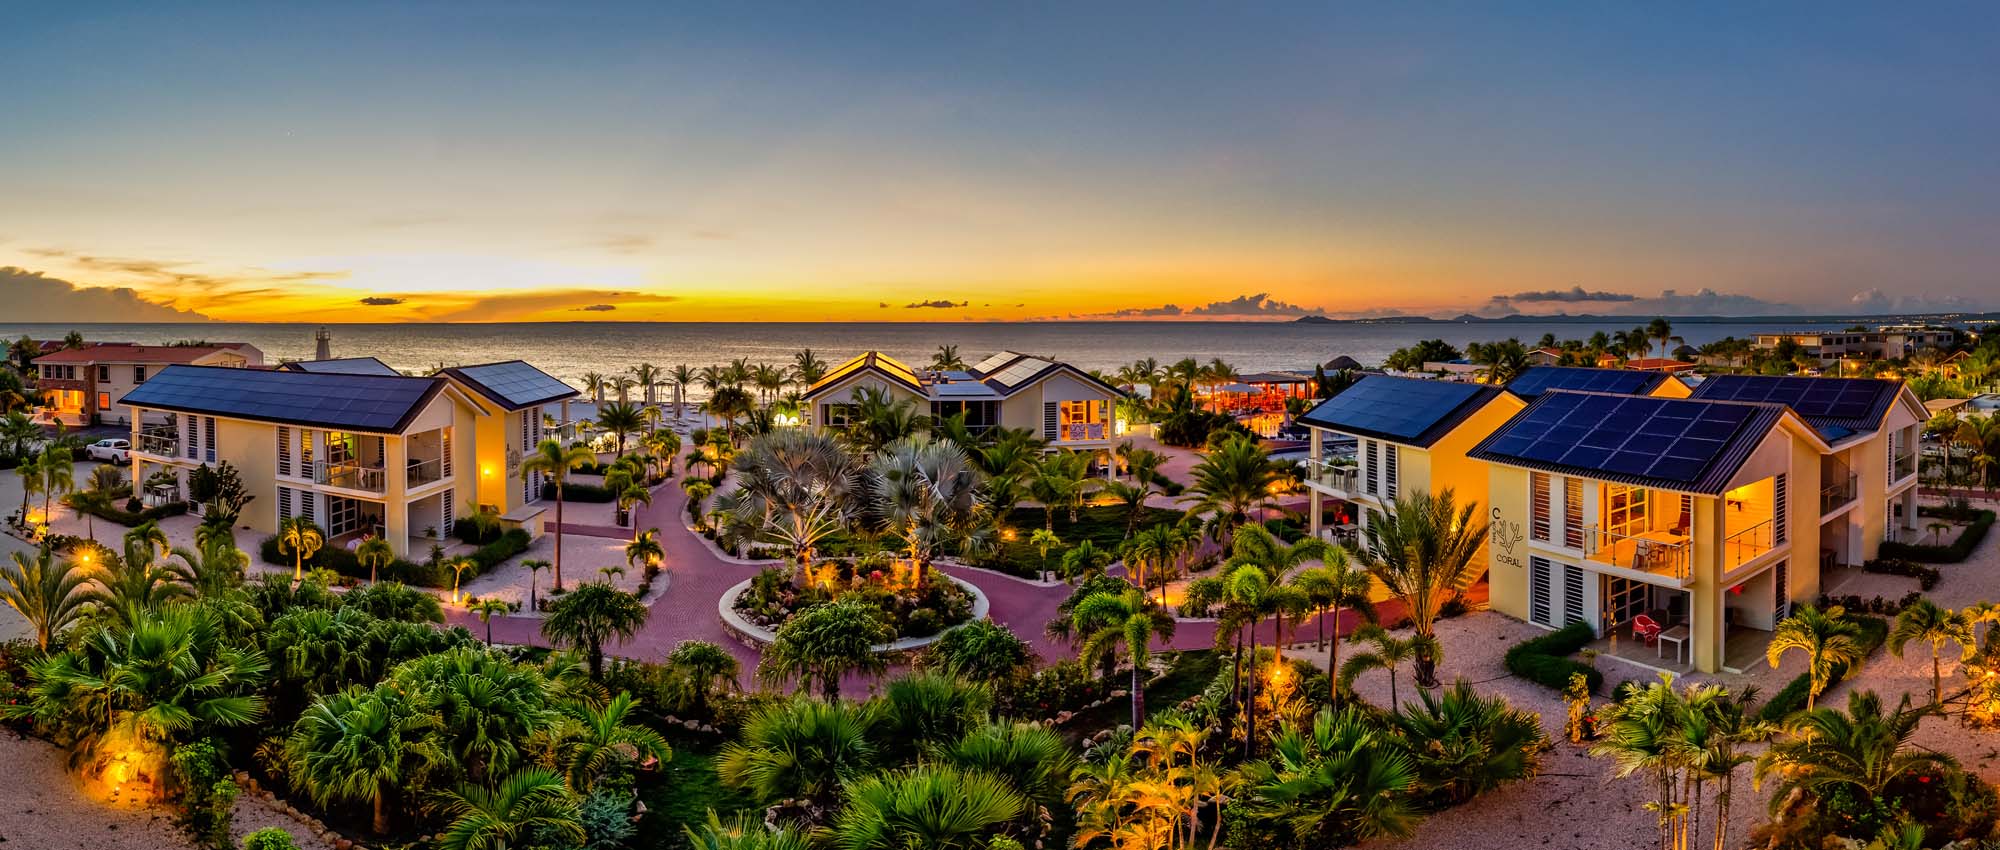 Panoramisch uitzicht op het hotelterrein met oceaanzicht tijdens zonsondergang